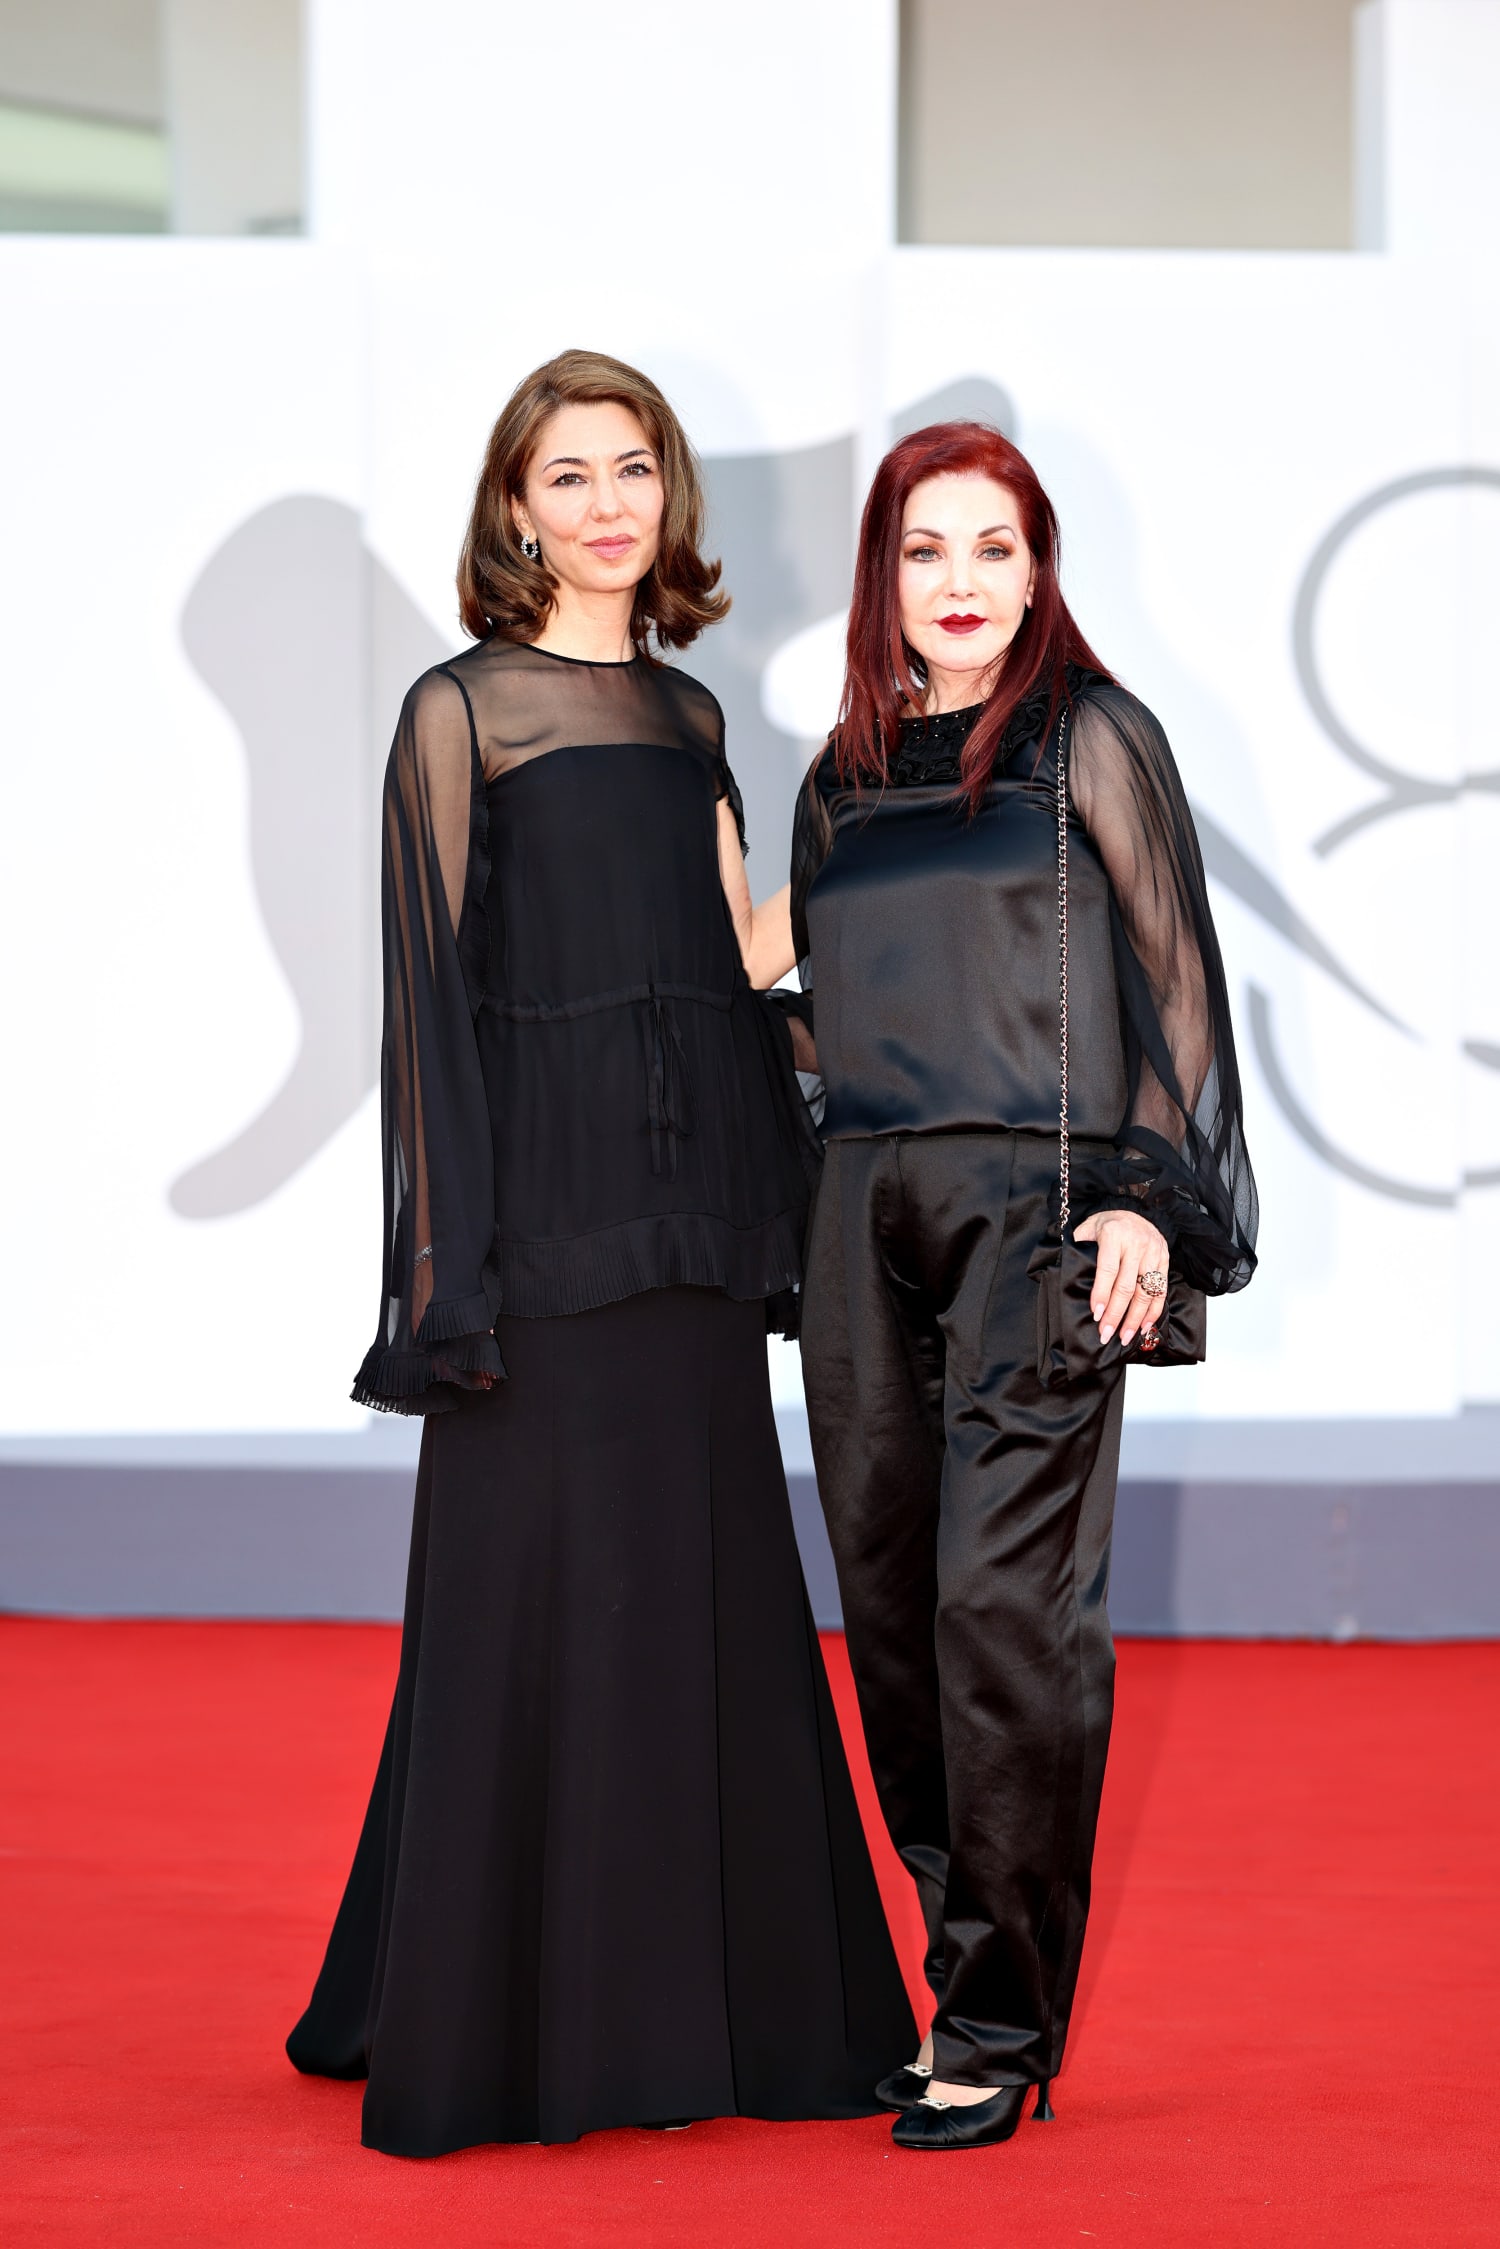 Sofia Coppola Steps Out In Chanel For The Premiere Of Her Film “Priscilla”  In Venice - A&E Magazine